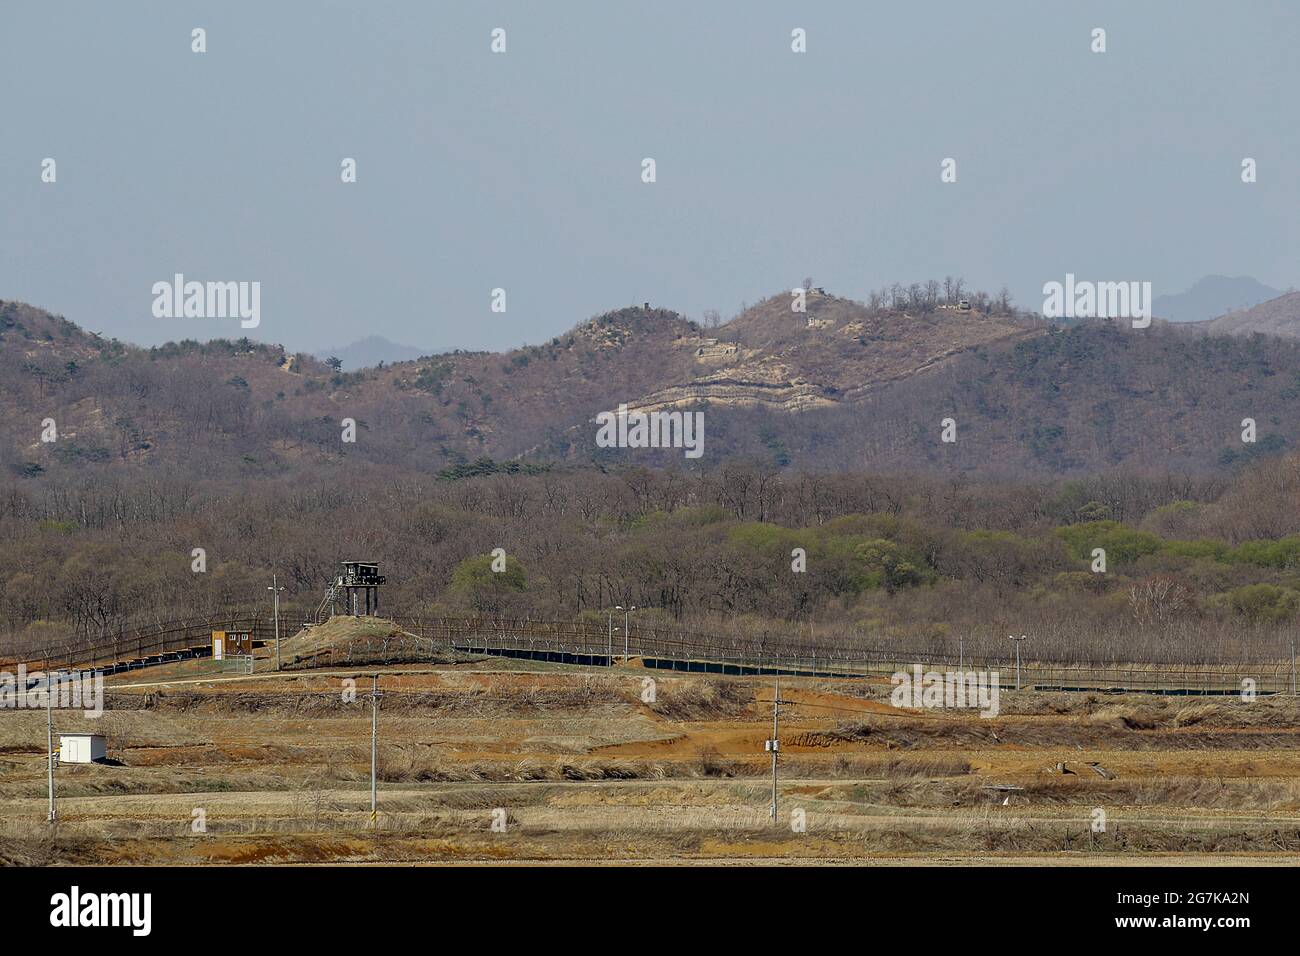 11 aprile 2018-Goyang, Corea del Sud-UNA visione della guerra coreana battaglia di cavallo bianco e la linea di controllo civile a Cheorwon, Corea del Sud. La battaglia di White Horse fu un'altra in una serie di sanguinose battaglie per posizioni dominanti in cima alla collina durante la guerra coreana. Baengma-goji era una collina di 395 metri (1,296 piedi) nel Triangolo del ferro, formata da Pyonggang alla sua cima e Gimhwa-eup e Cheorwon alla sua base, era un percorso di trasporto strategico nella regione centrale della penisola coreana. White Horse era la cresta di una collina boscosa che si estendeva in direzione nord-ovest-sud-est per circa tre miglia Foto Stock